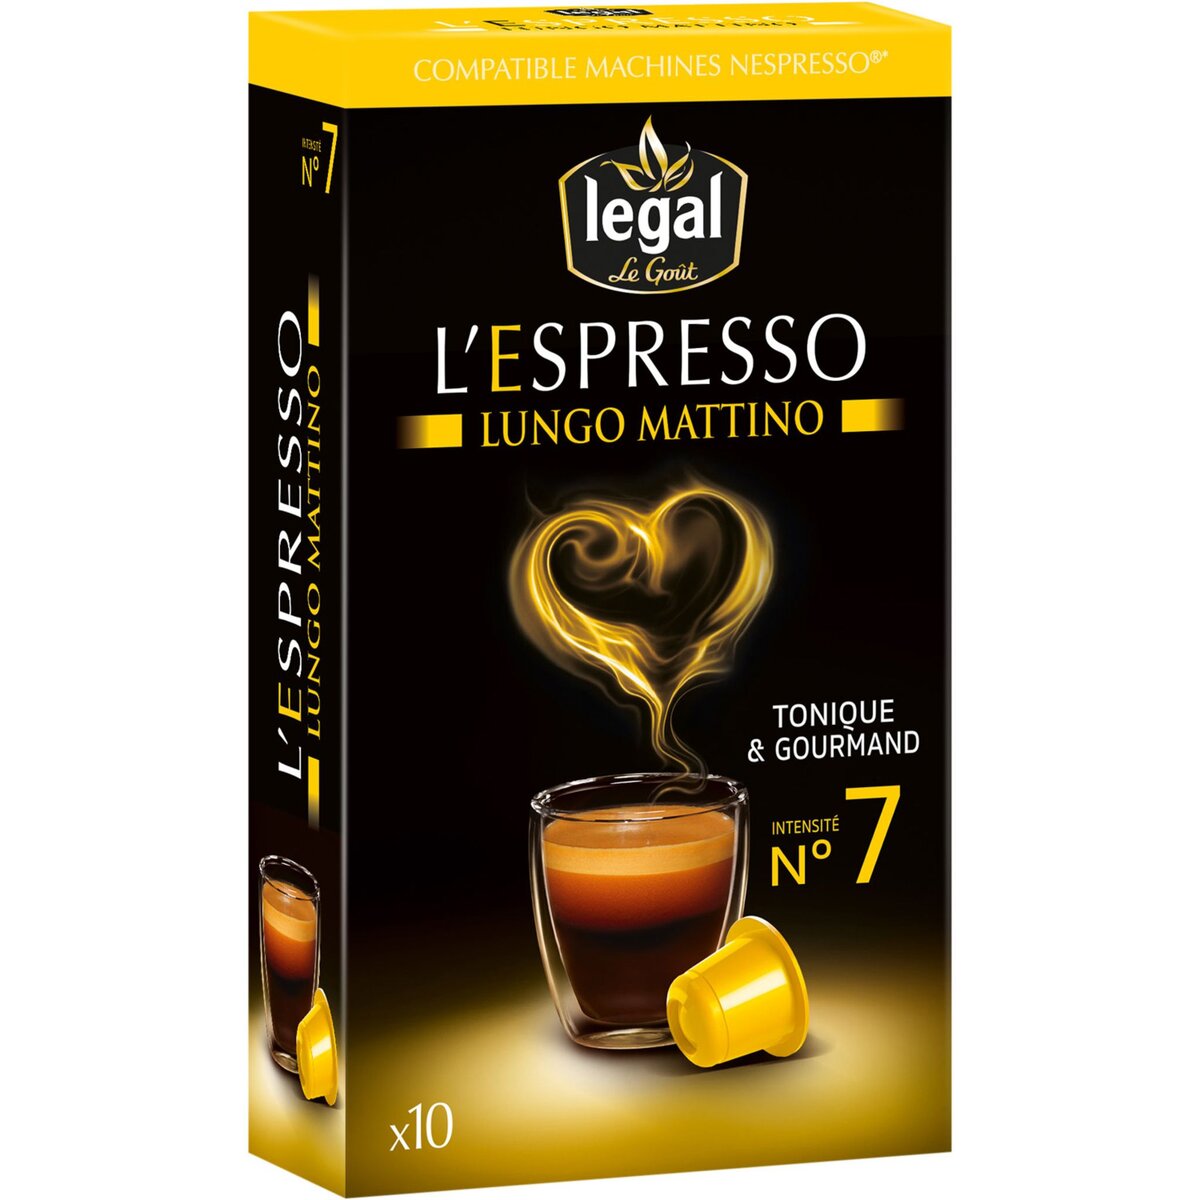 LEGAL Legal l'espresso lungo mattino nespresso capsule x10 -50g